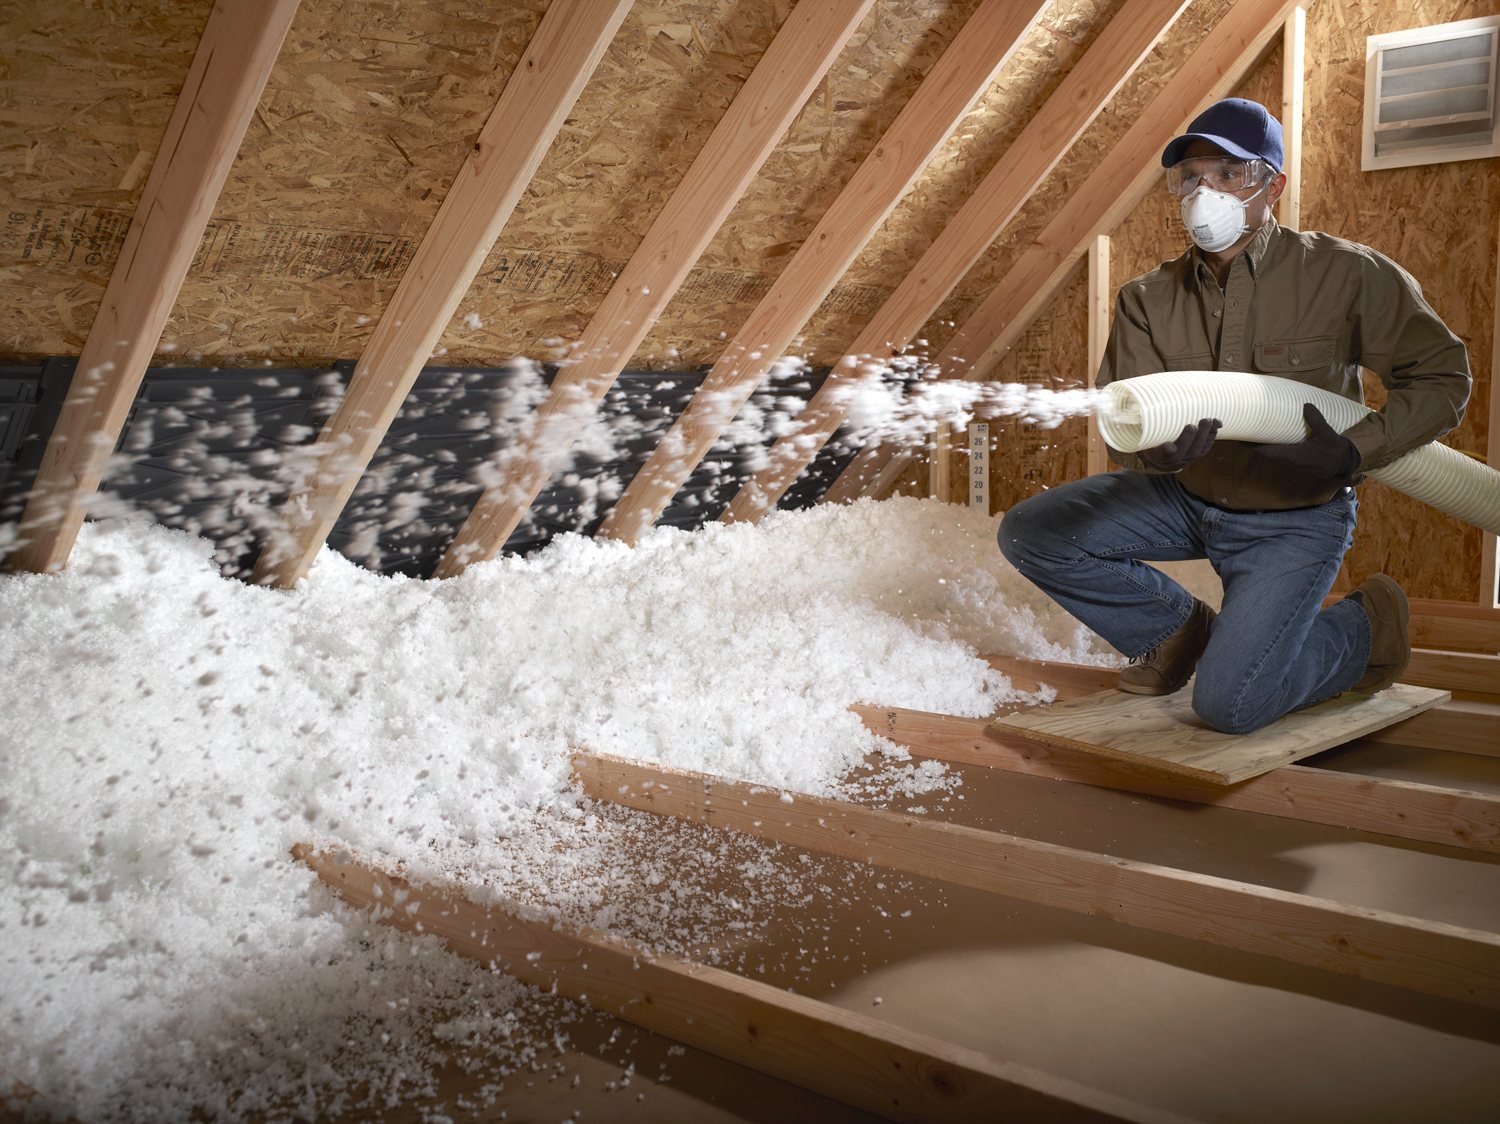 attic insulation install in progress